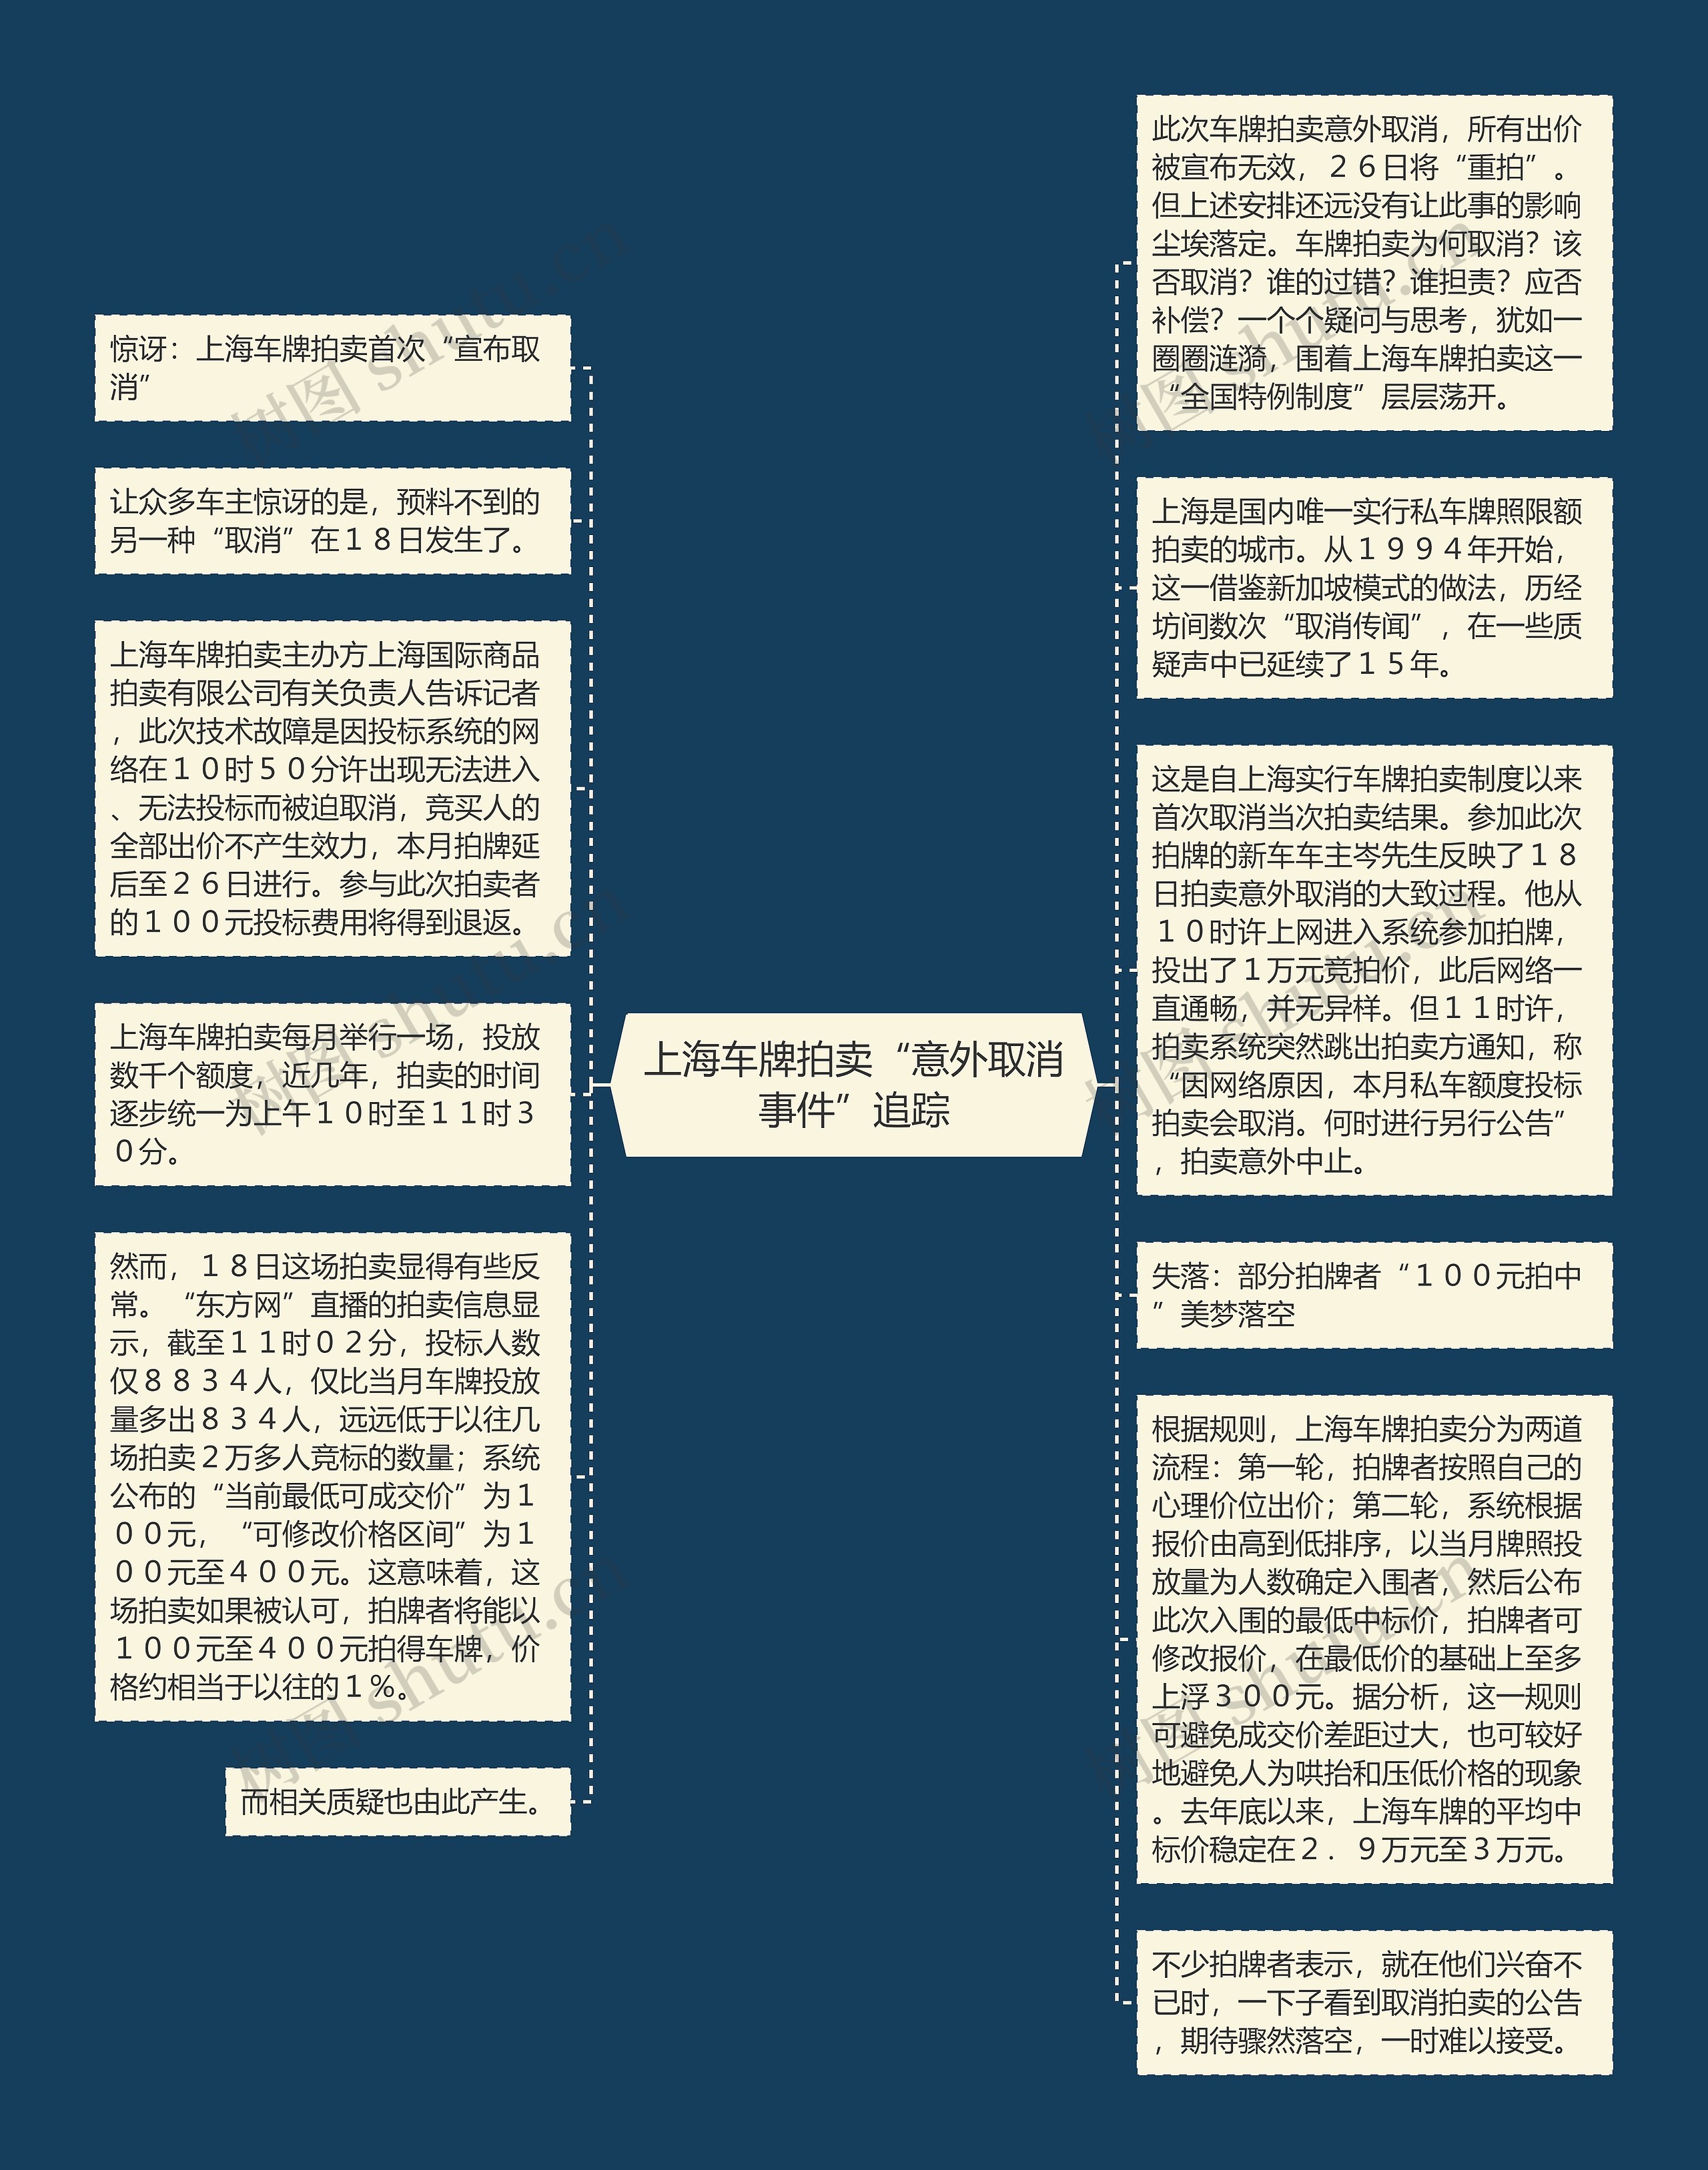 上海车牌拍卖“意外取消事件”追踪思维导图